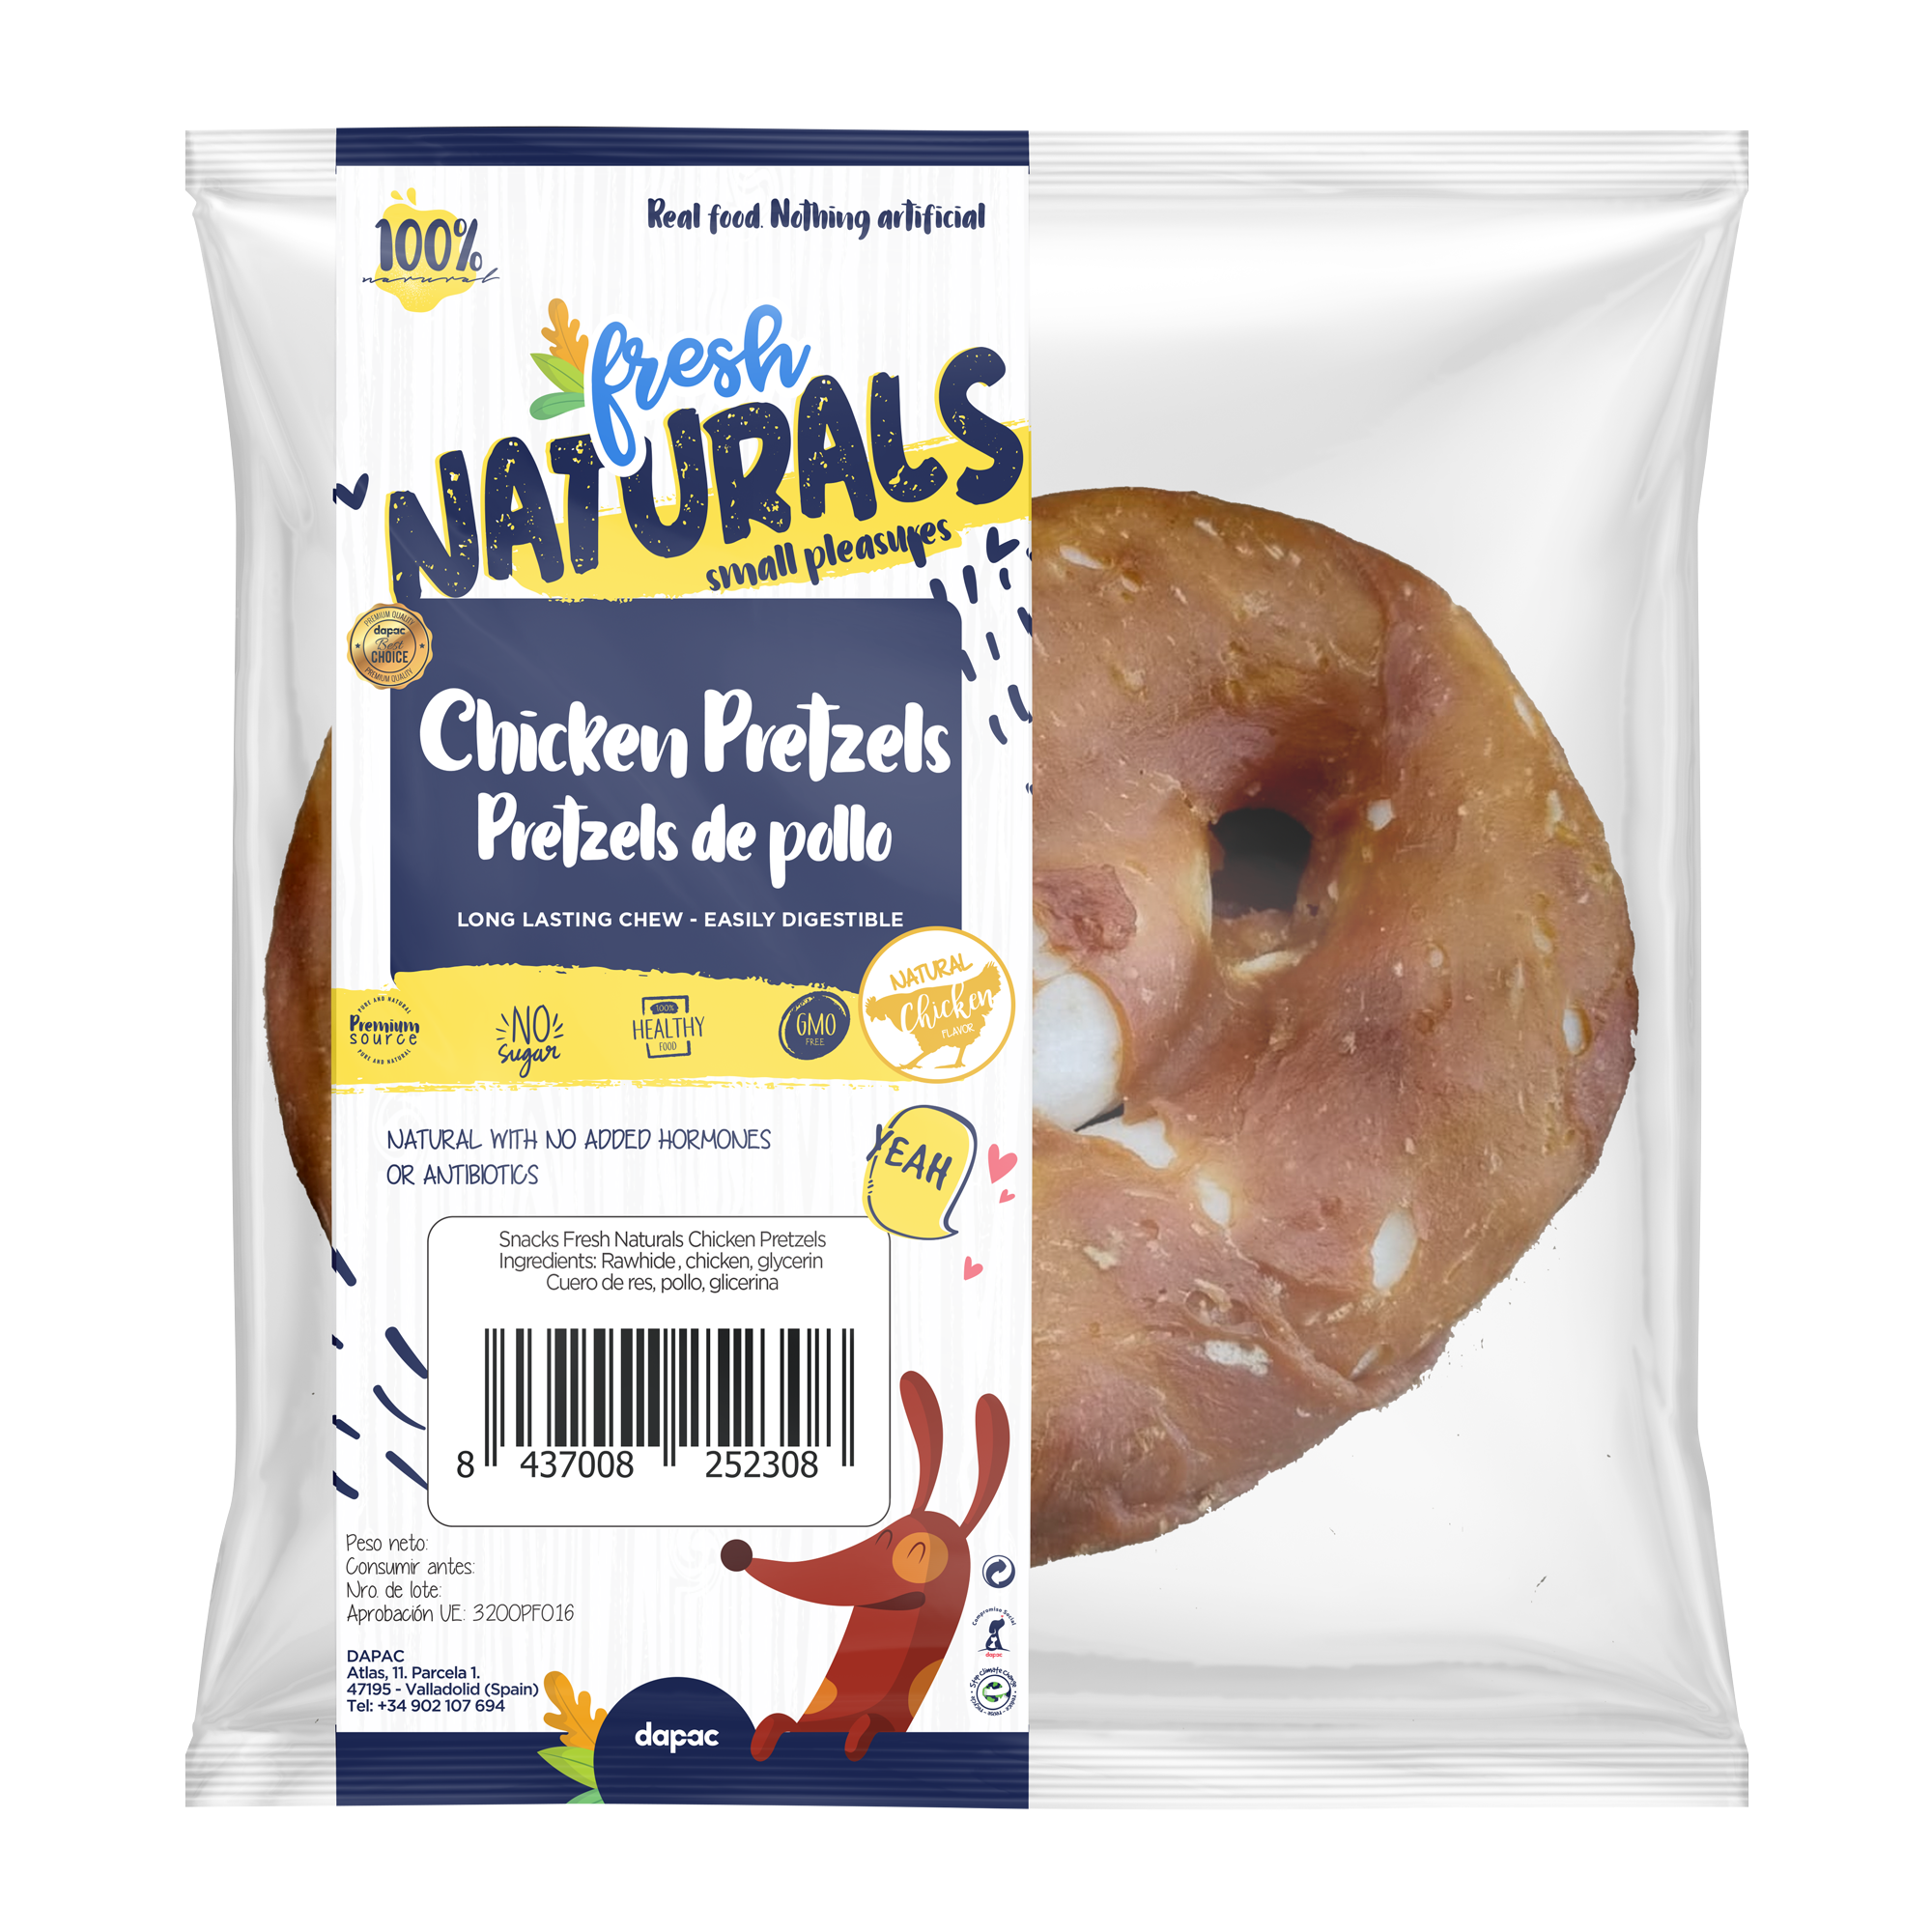 Fresh naturals chicken pretzel, snack natural perros pretzel de pollo